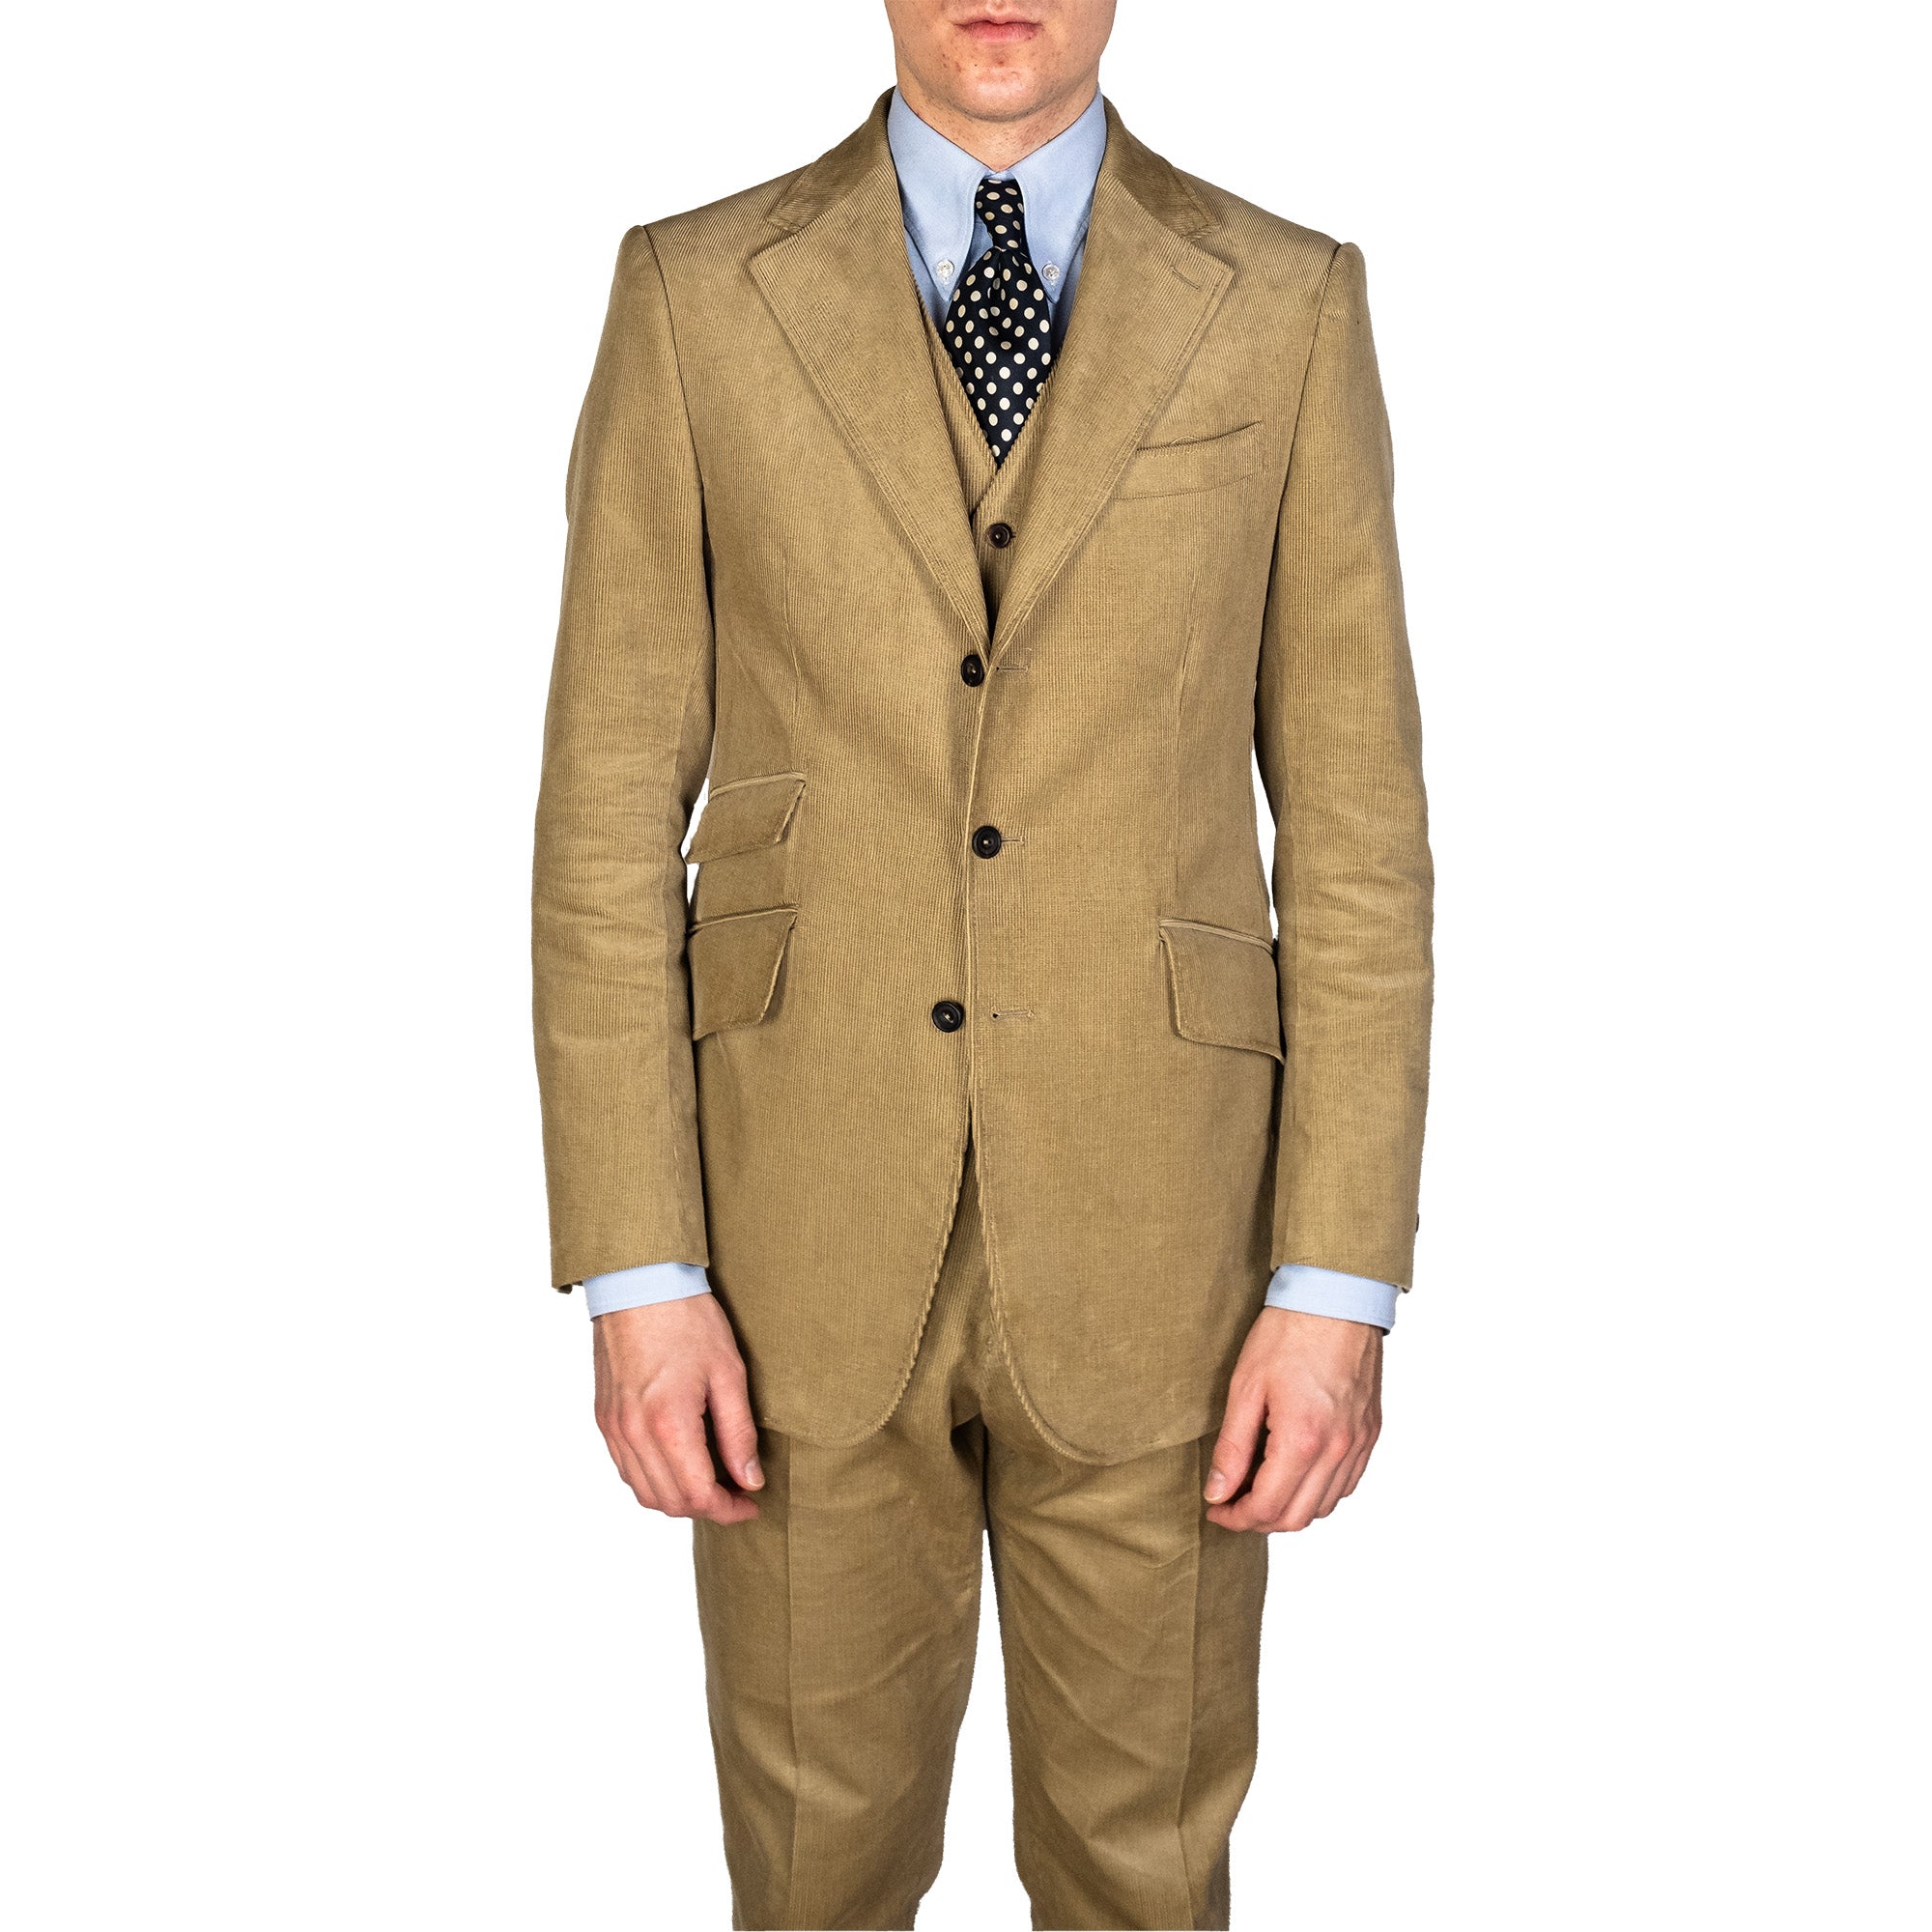 Suit - Beige Corduroy